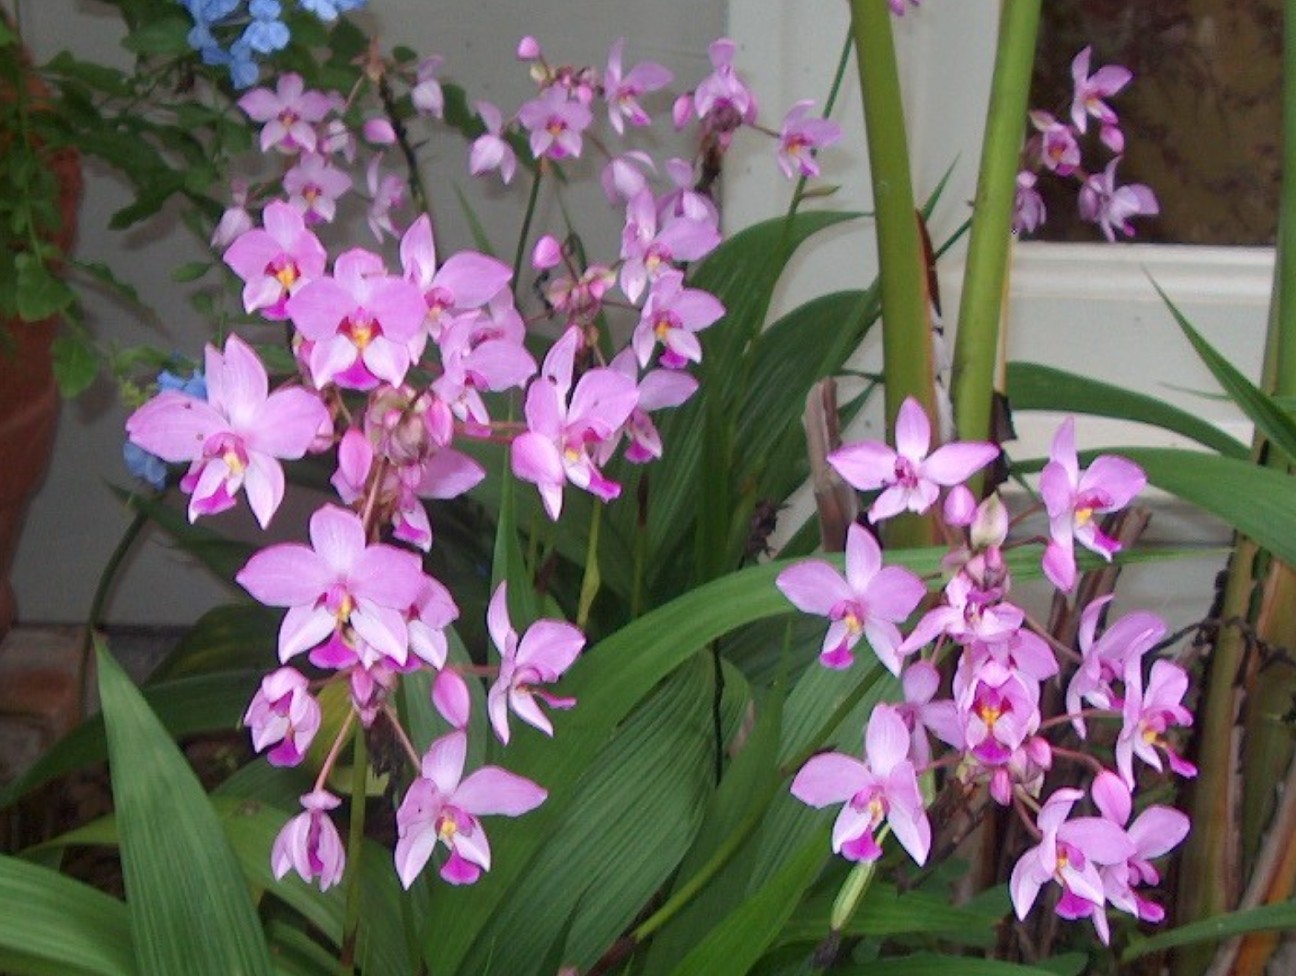 Spathogattis plicata / Philippine Ground Orchid